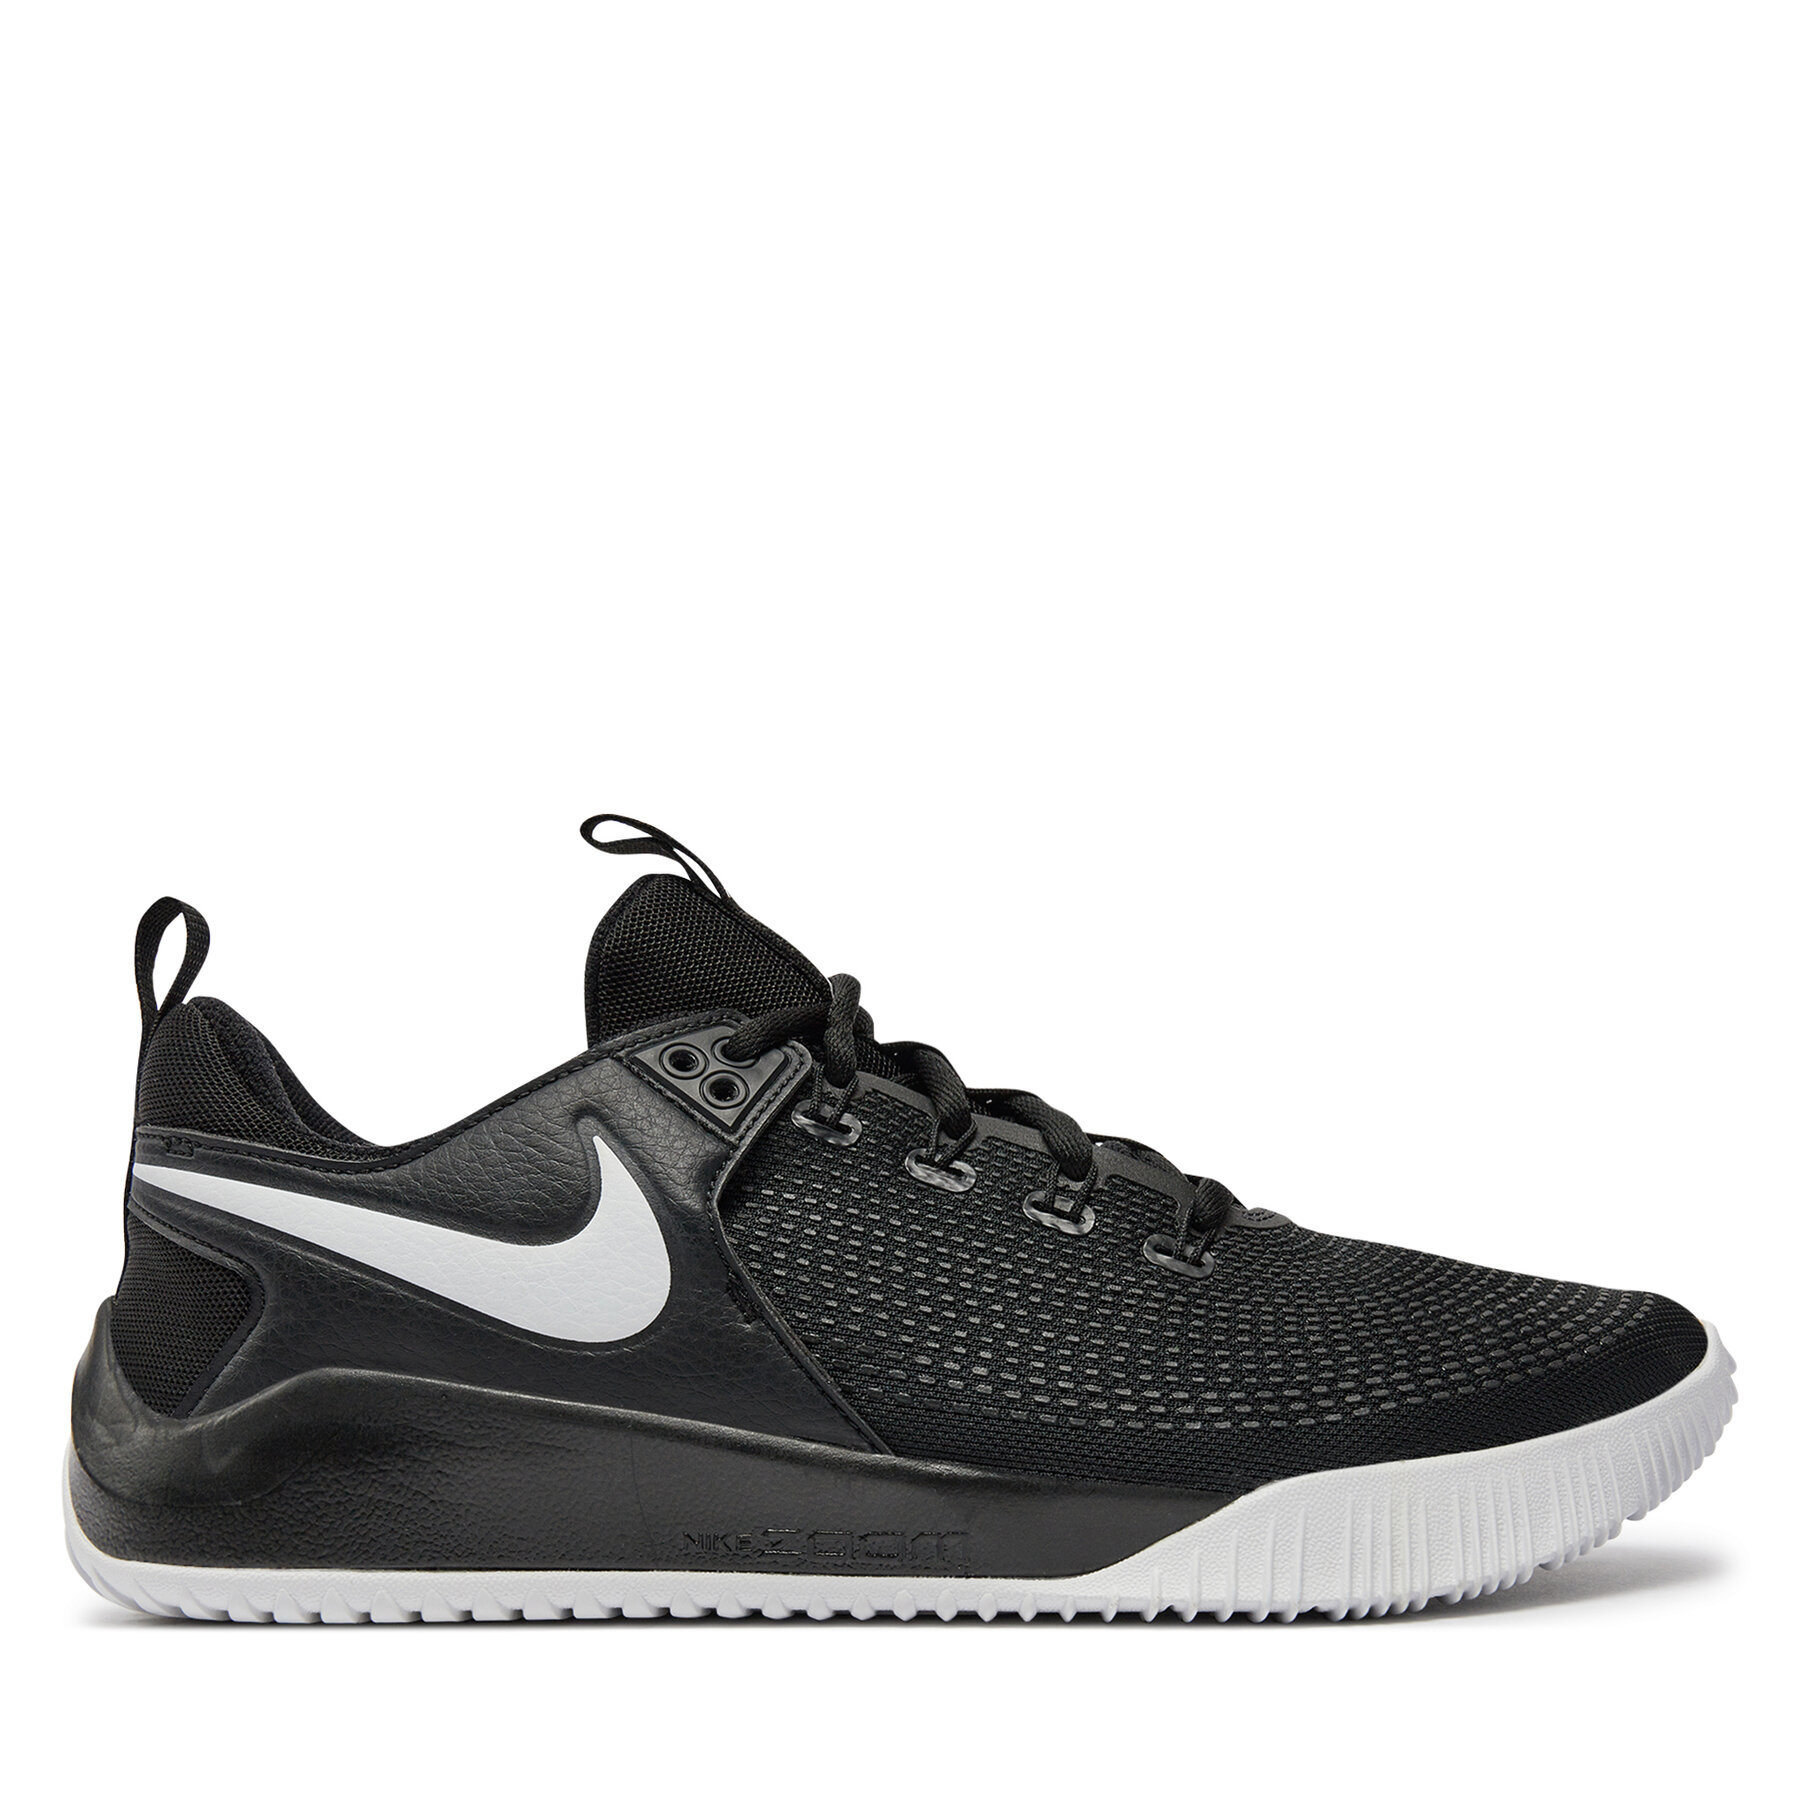 Chaussures Nike Air Zoom Hyperrace 2 AR5281 001 Noir